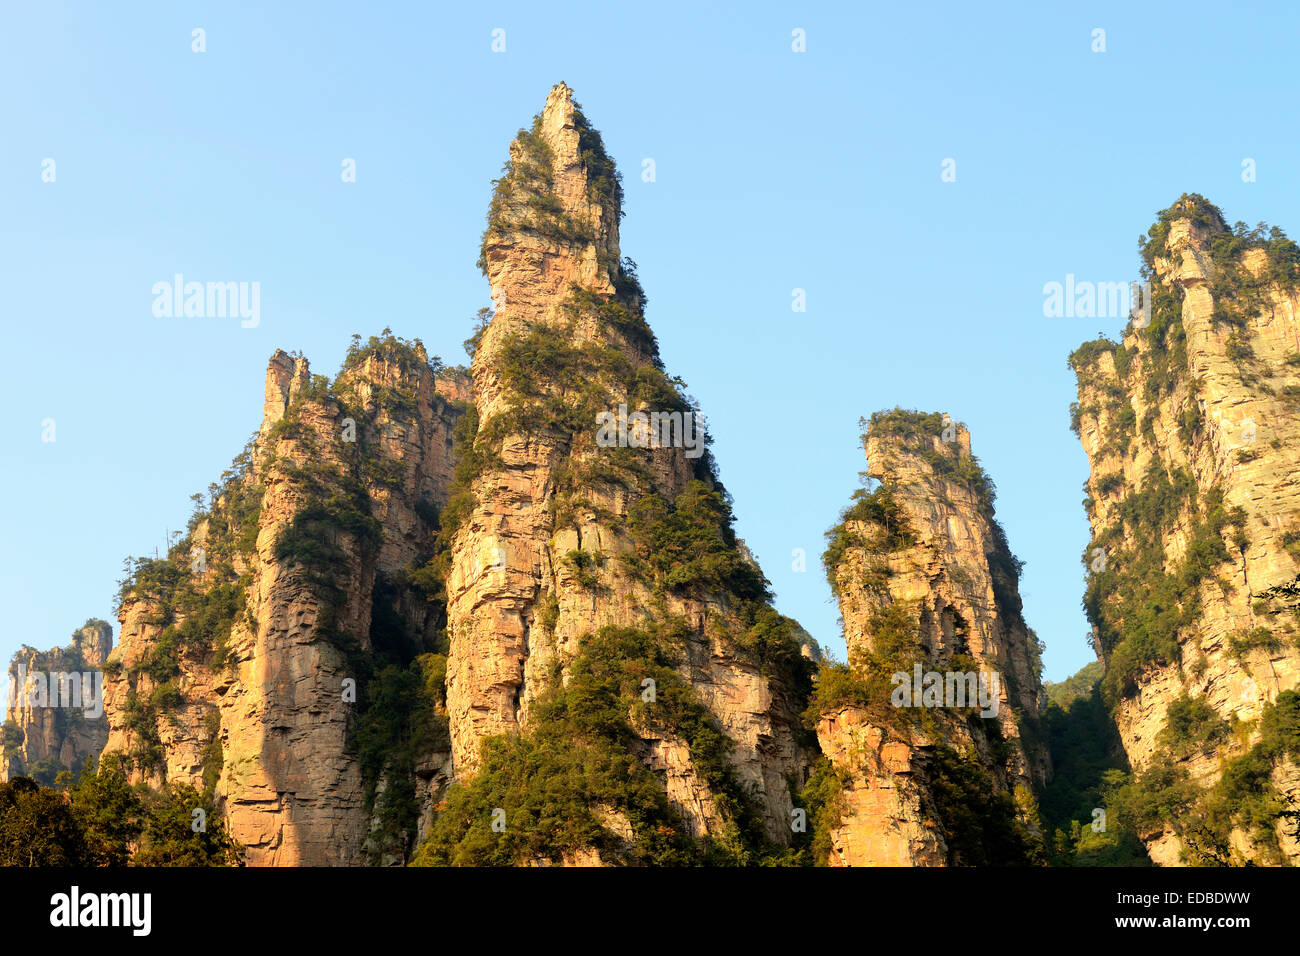 Rochers de grès dans le parc forestier national de Zhangjiajie, Province du Hunan, Chine Banque D'Images